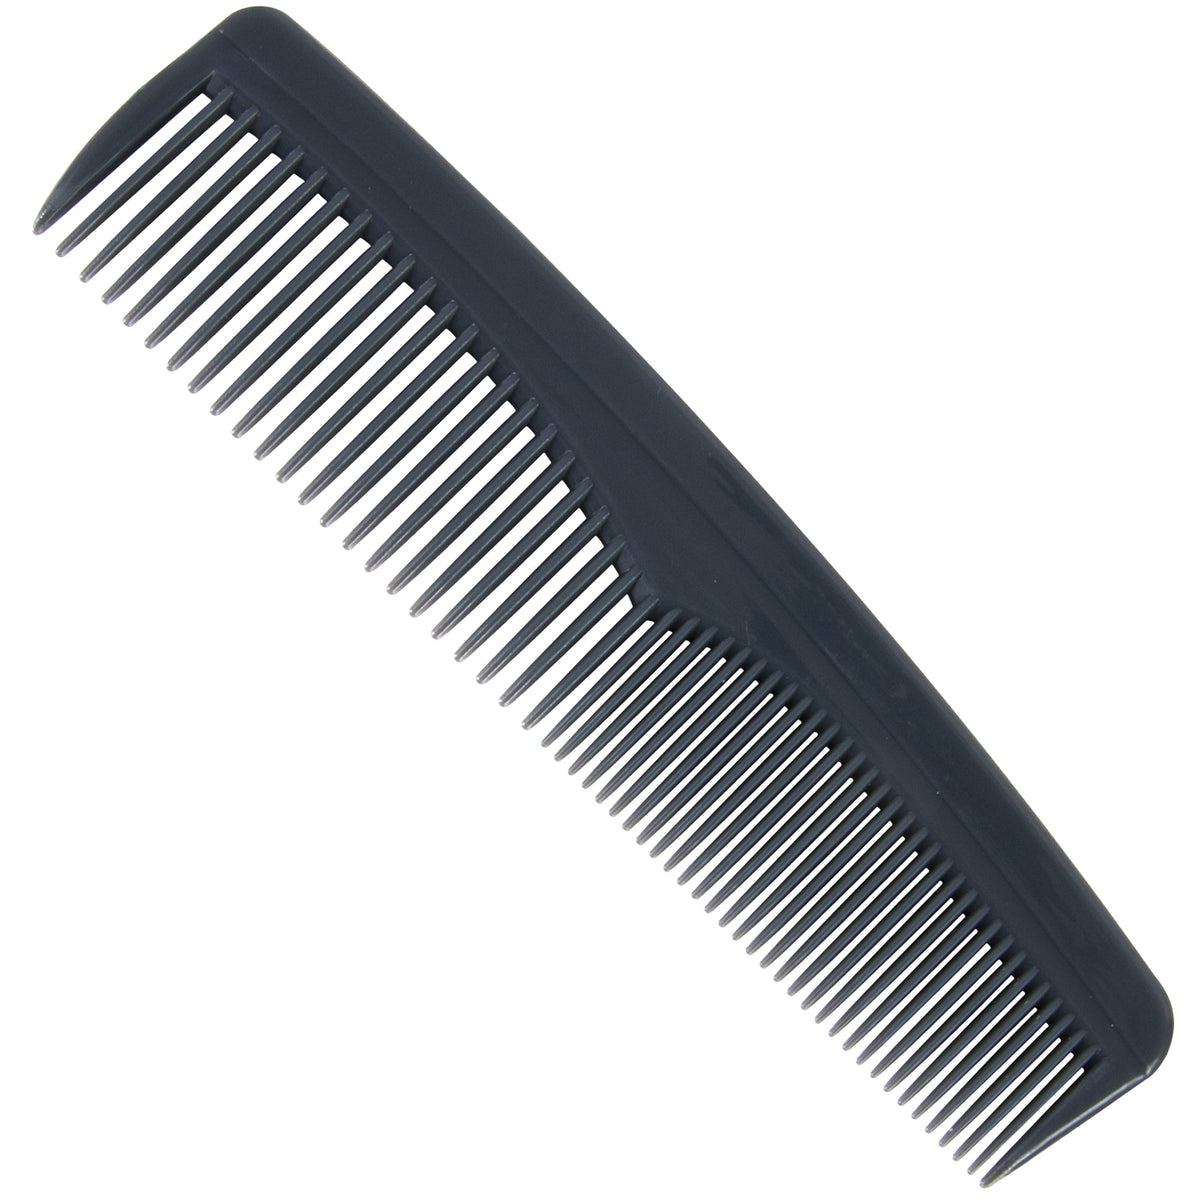 Wholesale Black Comb For Men & Women's